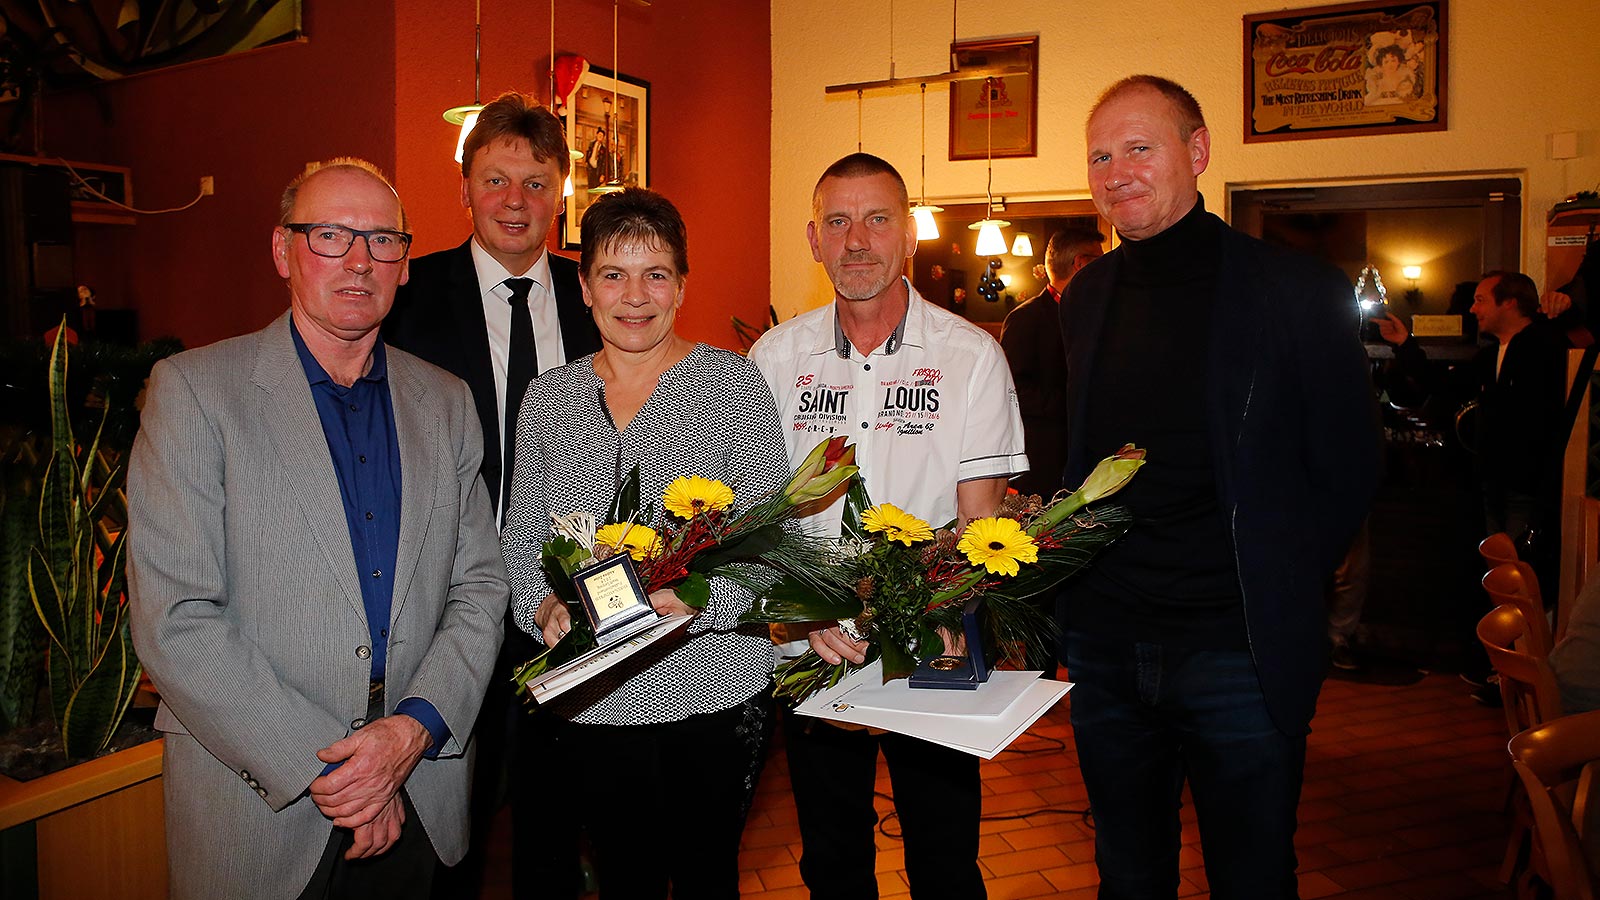 Erhielten die Ehrenamtsmedaille: Andrea und Thomas Zeise von der SG Bienitz. (Foto: Dirk Knofe/Sportbuzzer)